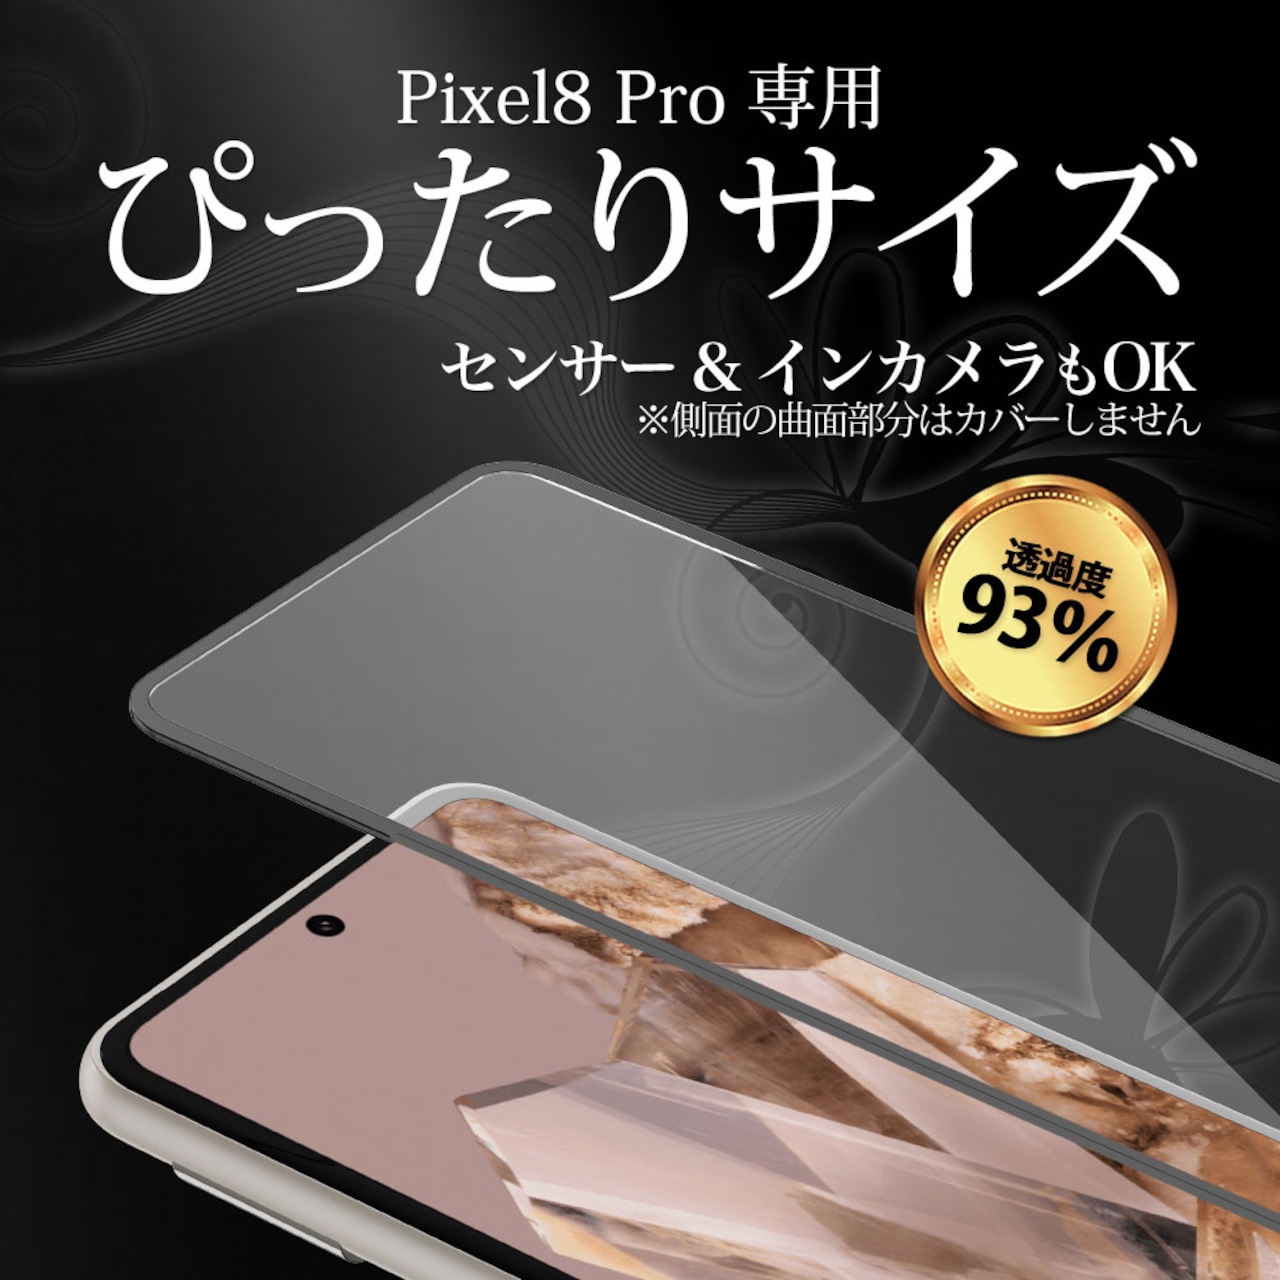 Hy+ Pixel8 Pro フィルム ピクセル8プロ ガラスフィルム W硬化製法 一般ガラスの3倍強度 全面保護 全面吸着 日本産ガラス使用 厚み0.33mm ブラック